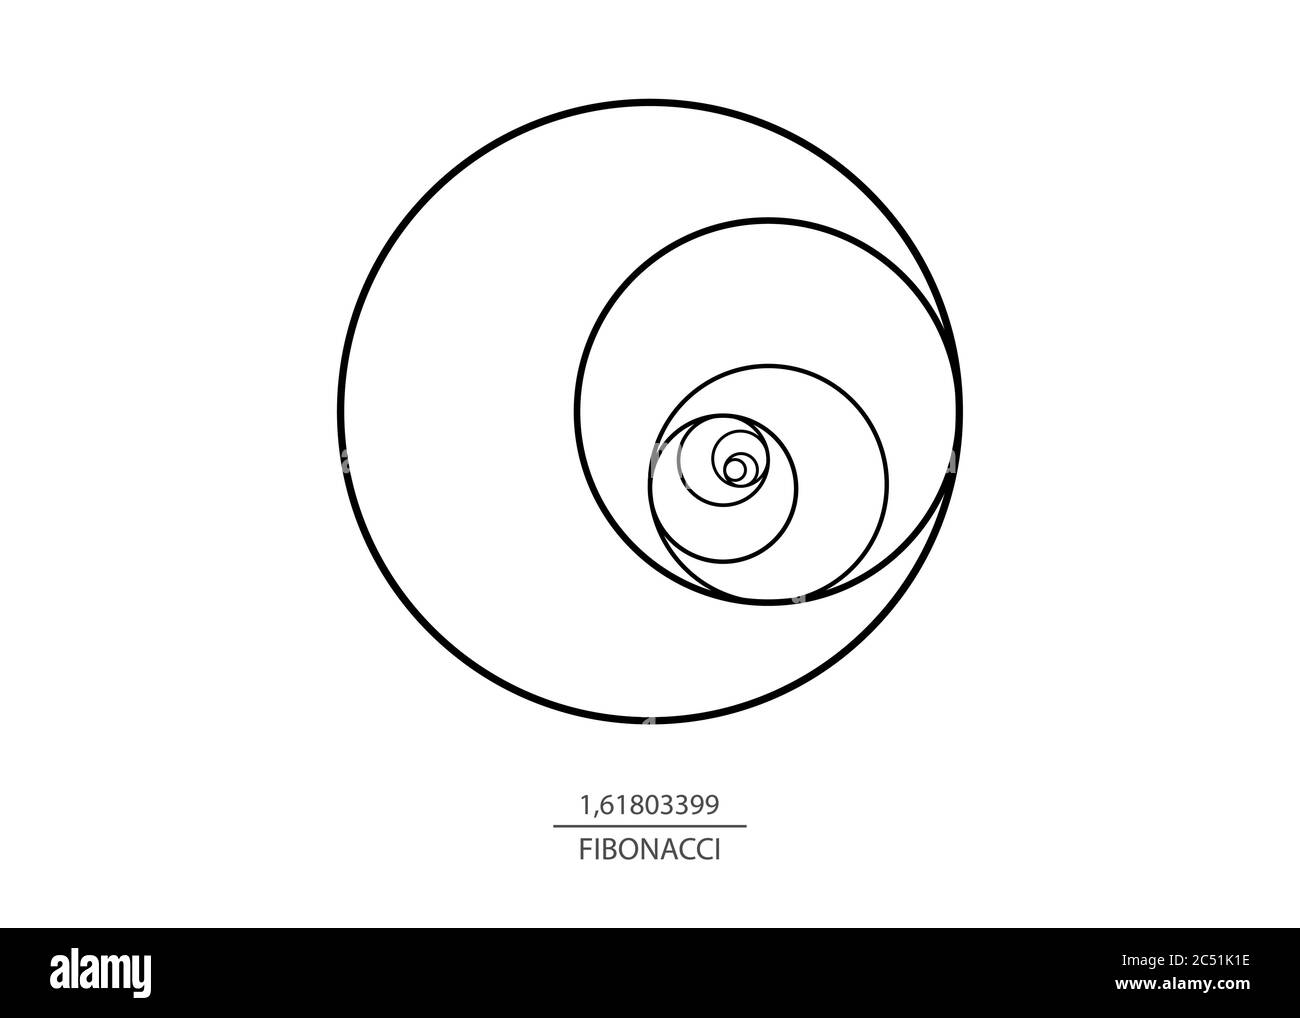 Cerchio di sequenza Fibonacci. Rapporto d'oro. Spirale con forme geometriche. Cerchi in proporzione dorata. Design futuristico minimalista di moda. Logo isolato Illustrazione Vettoriale